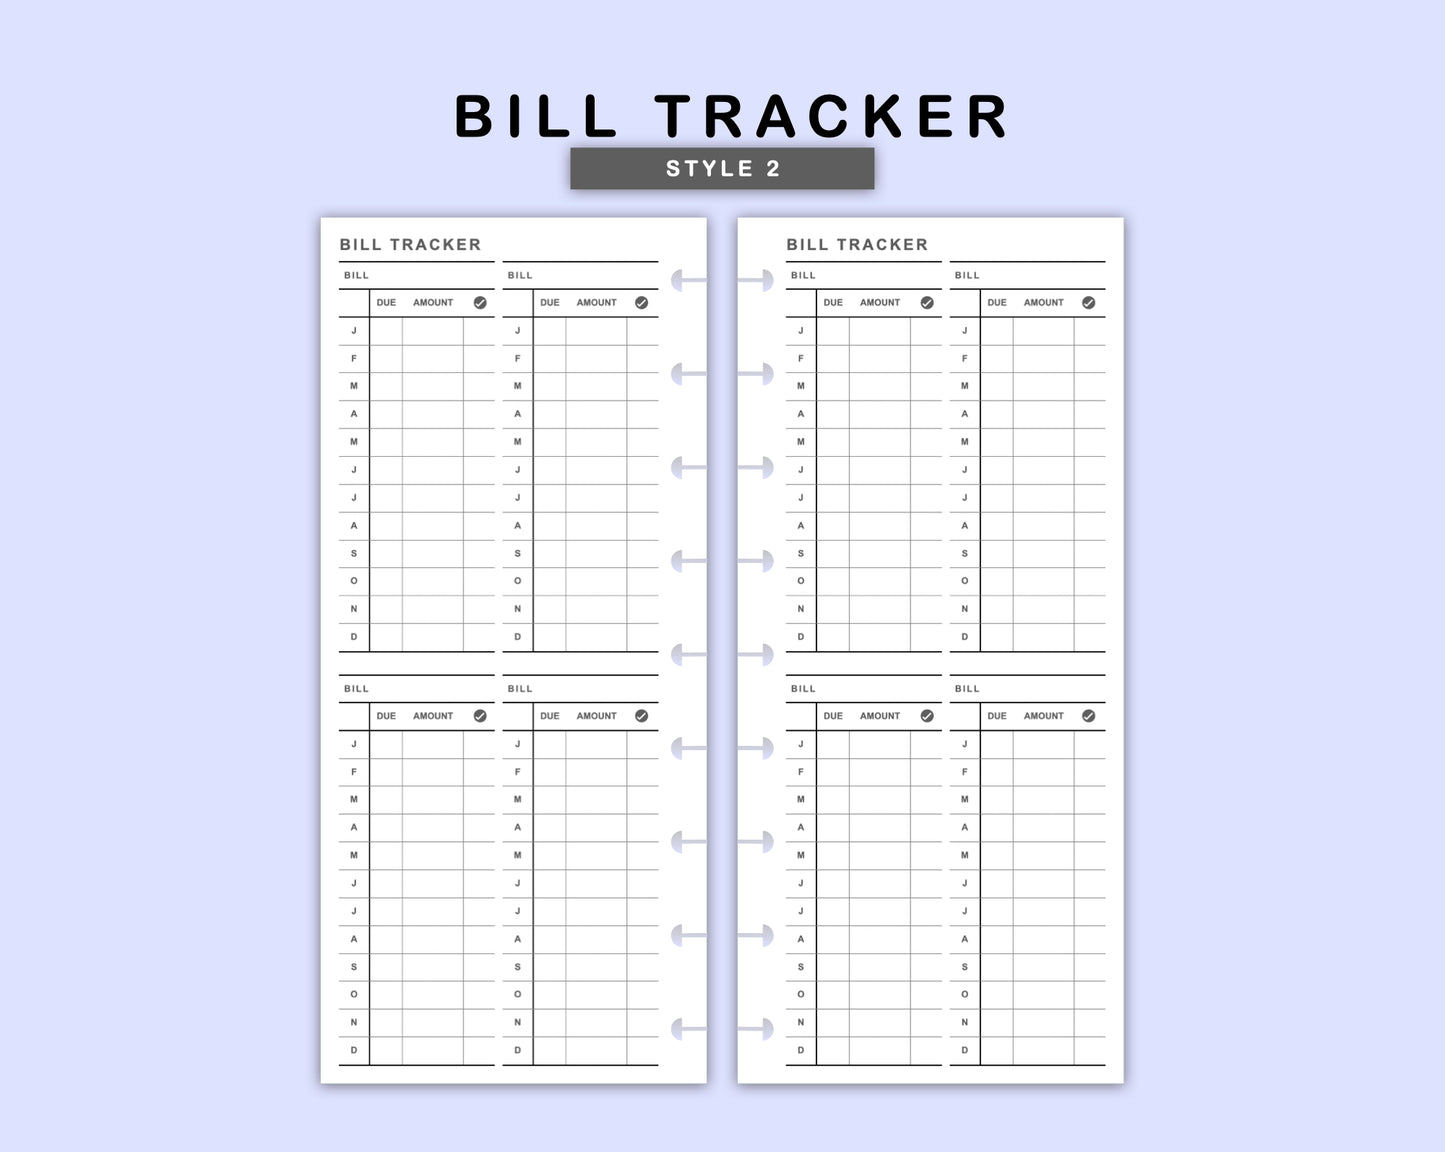 Skinny Classic HP Inserts - Bill Tracker